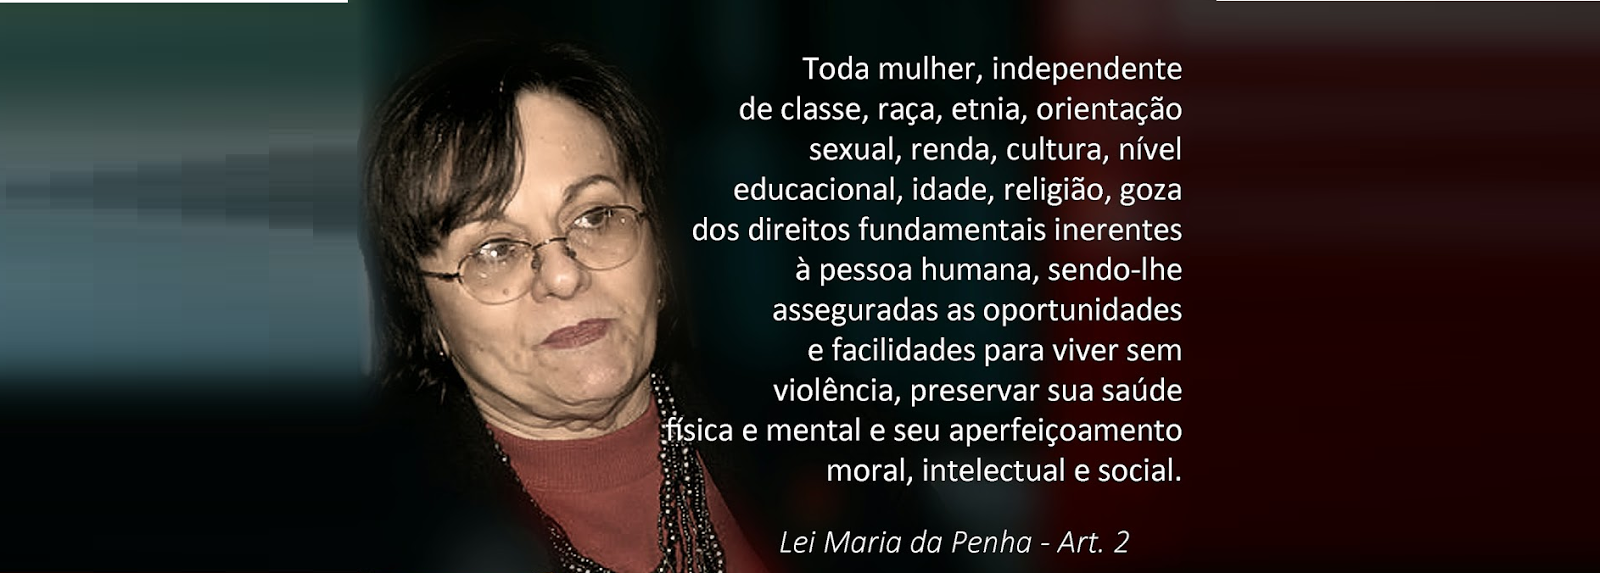 Maria da Penha, foi. vítima de violência